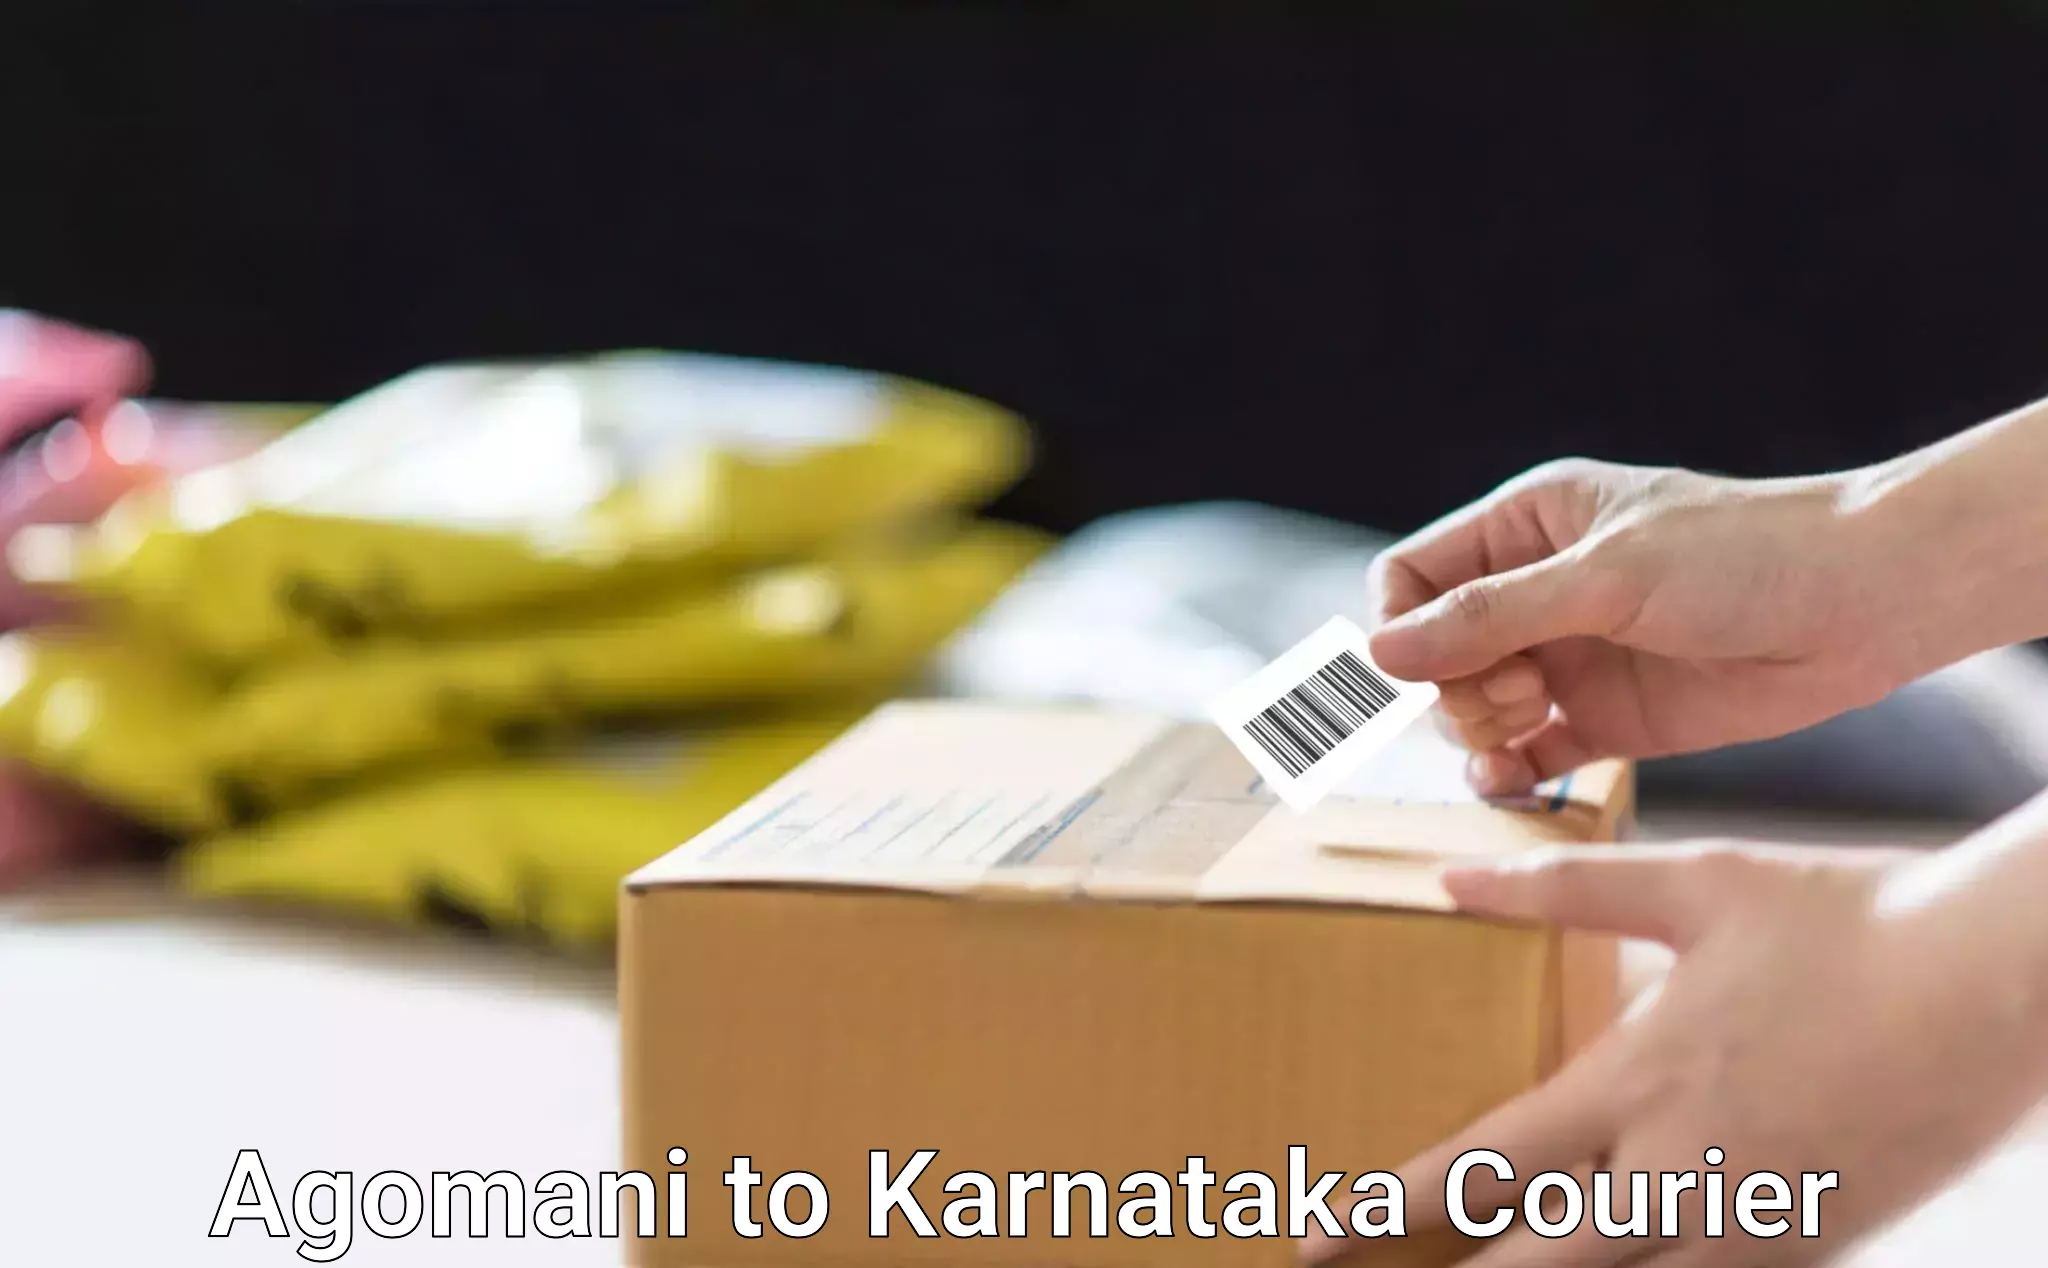 Same-day delivery solutions Agomani to Karnataka